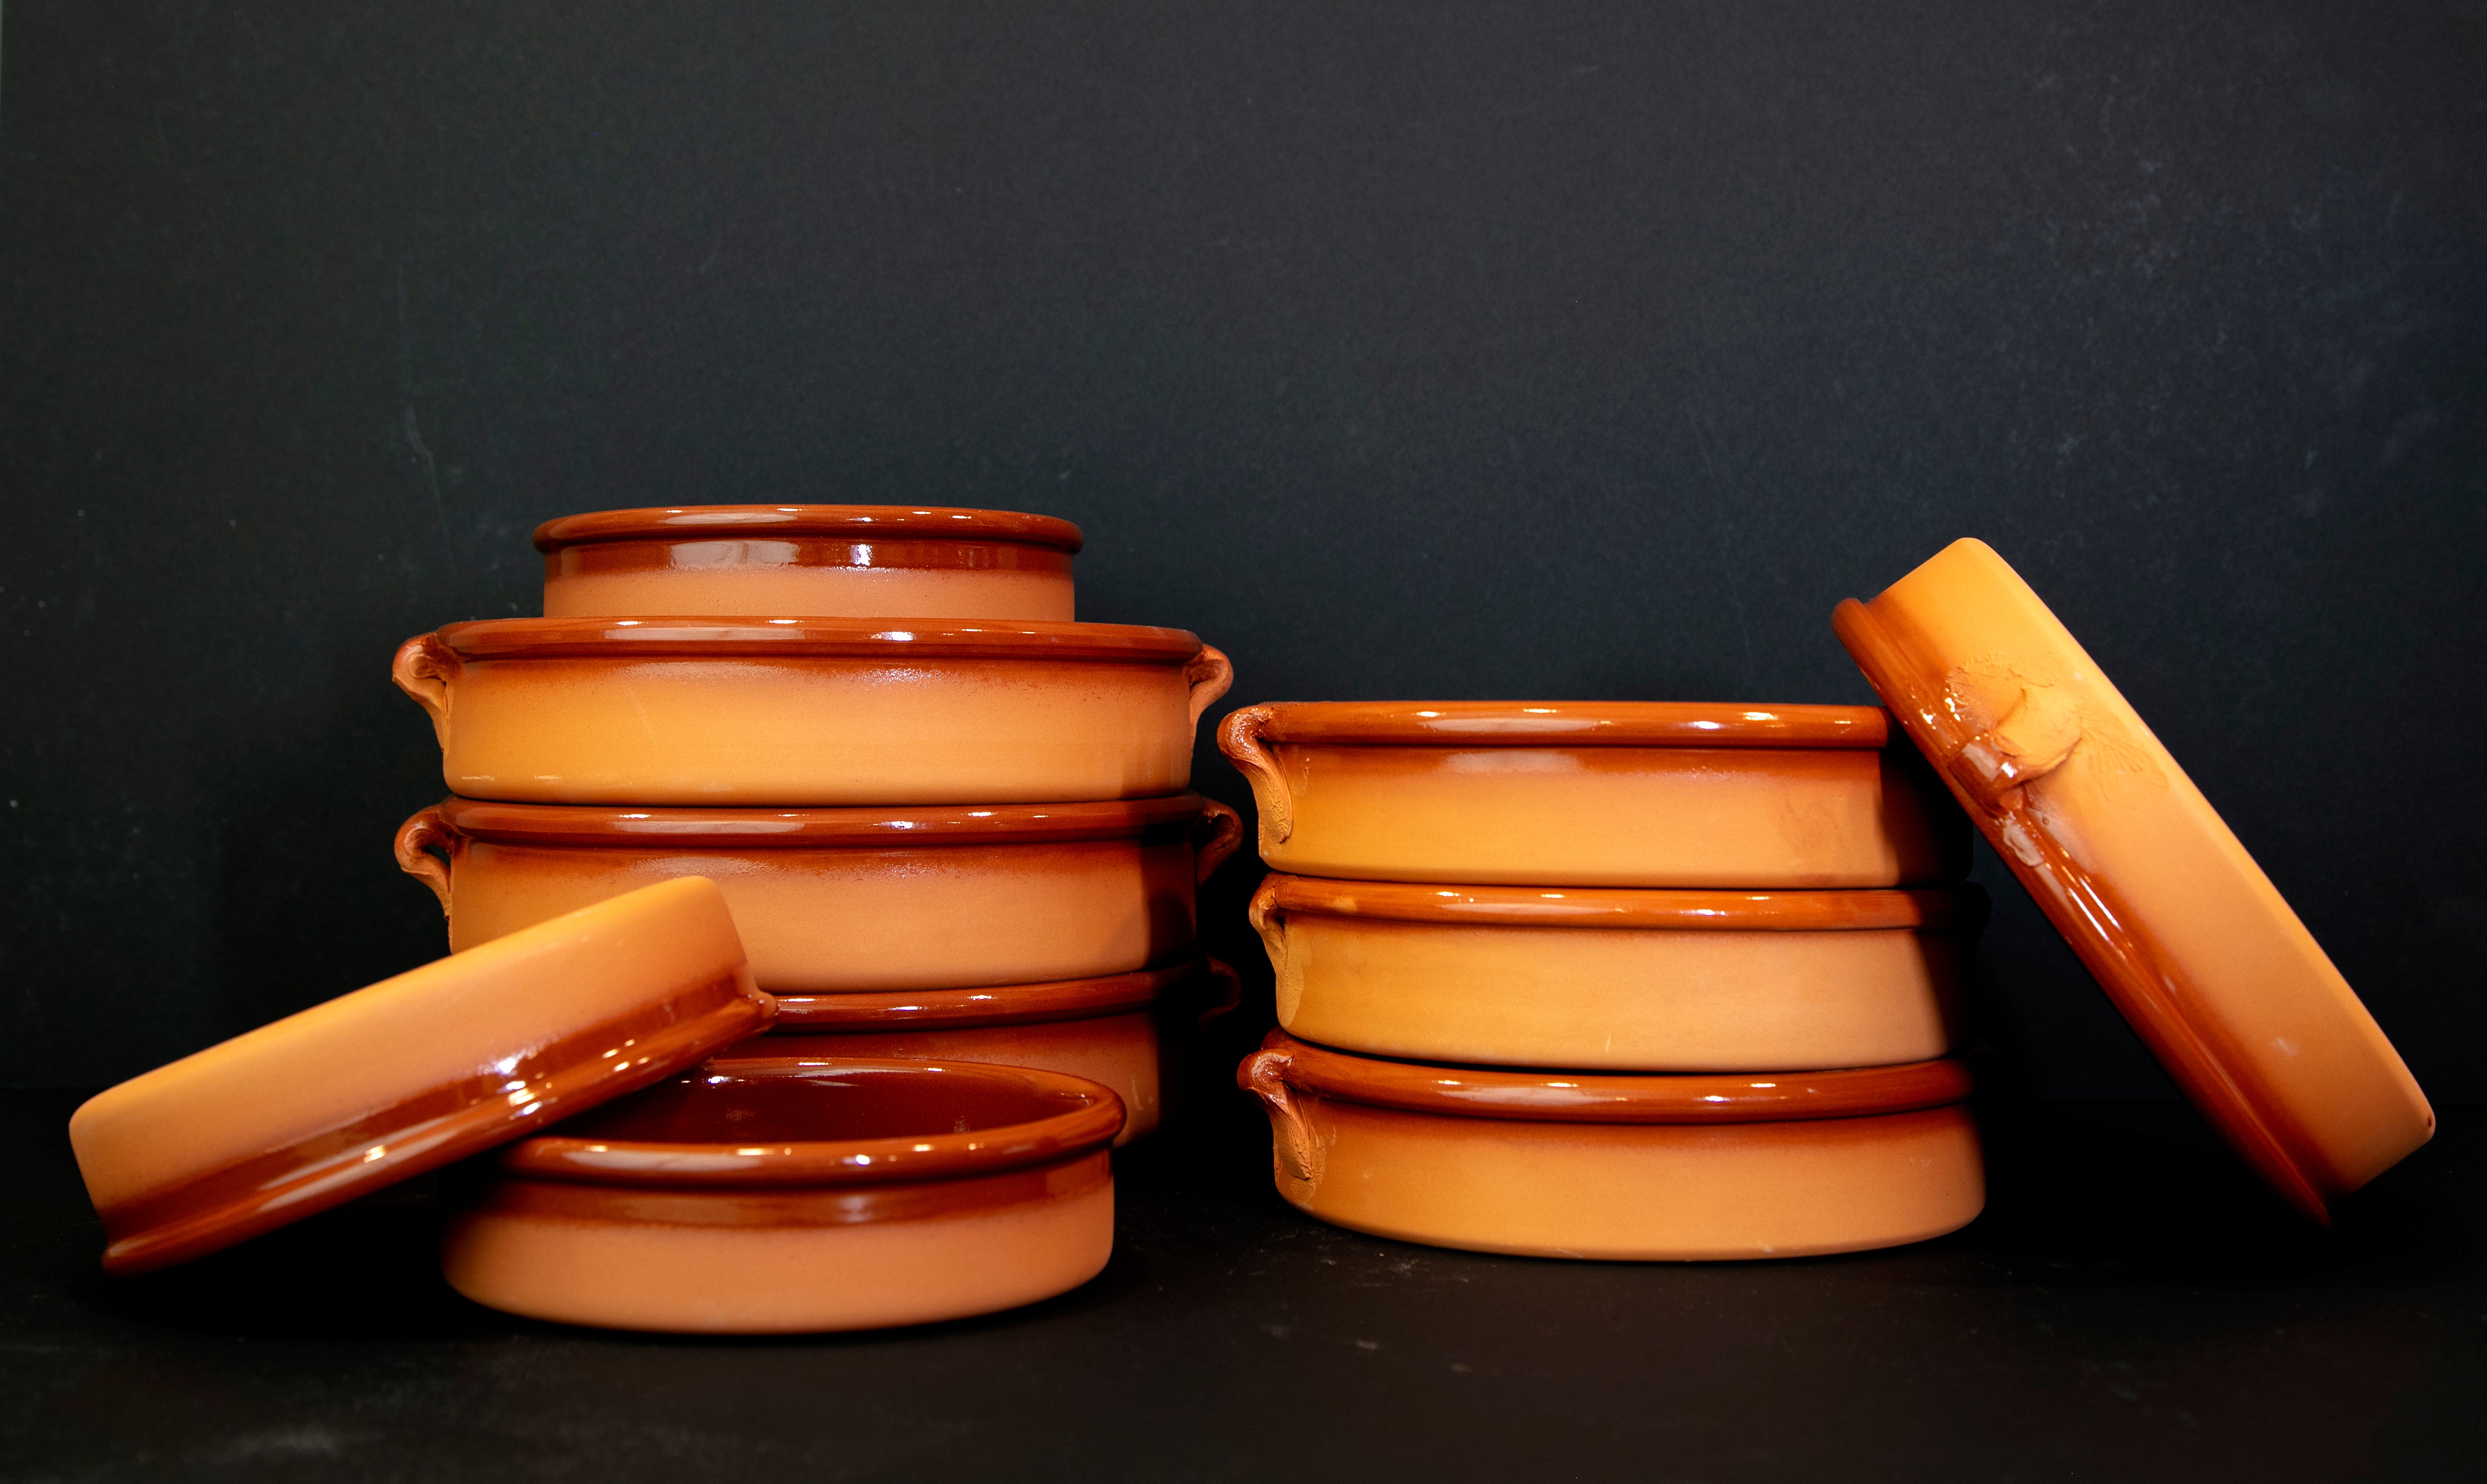 Terracotta "Cazuela" Clay Cookware